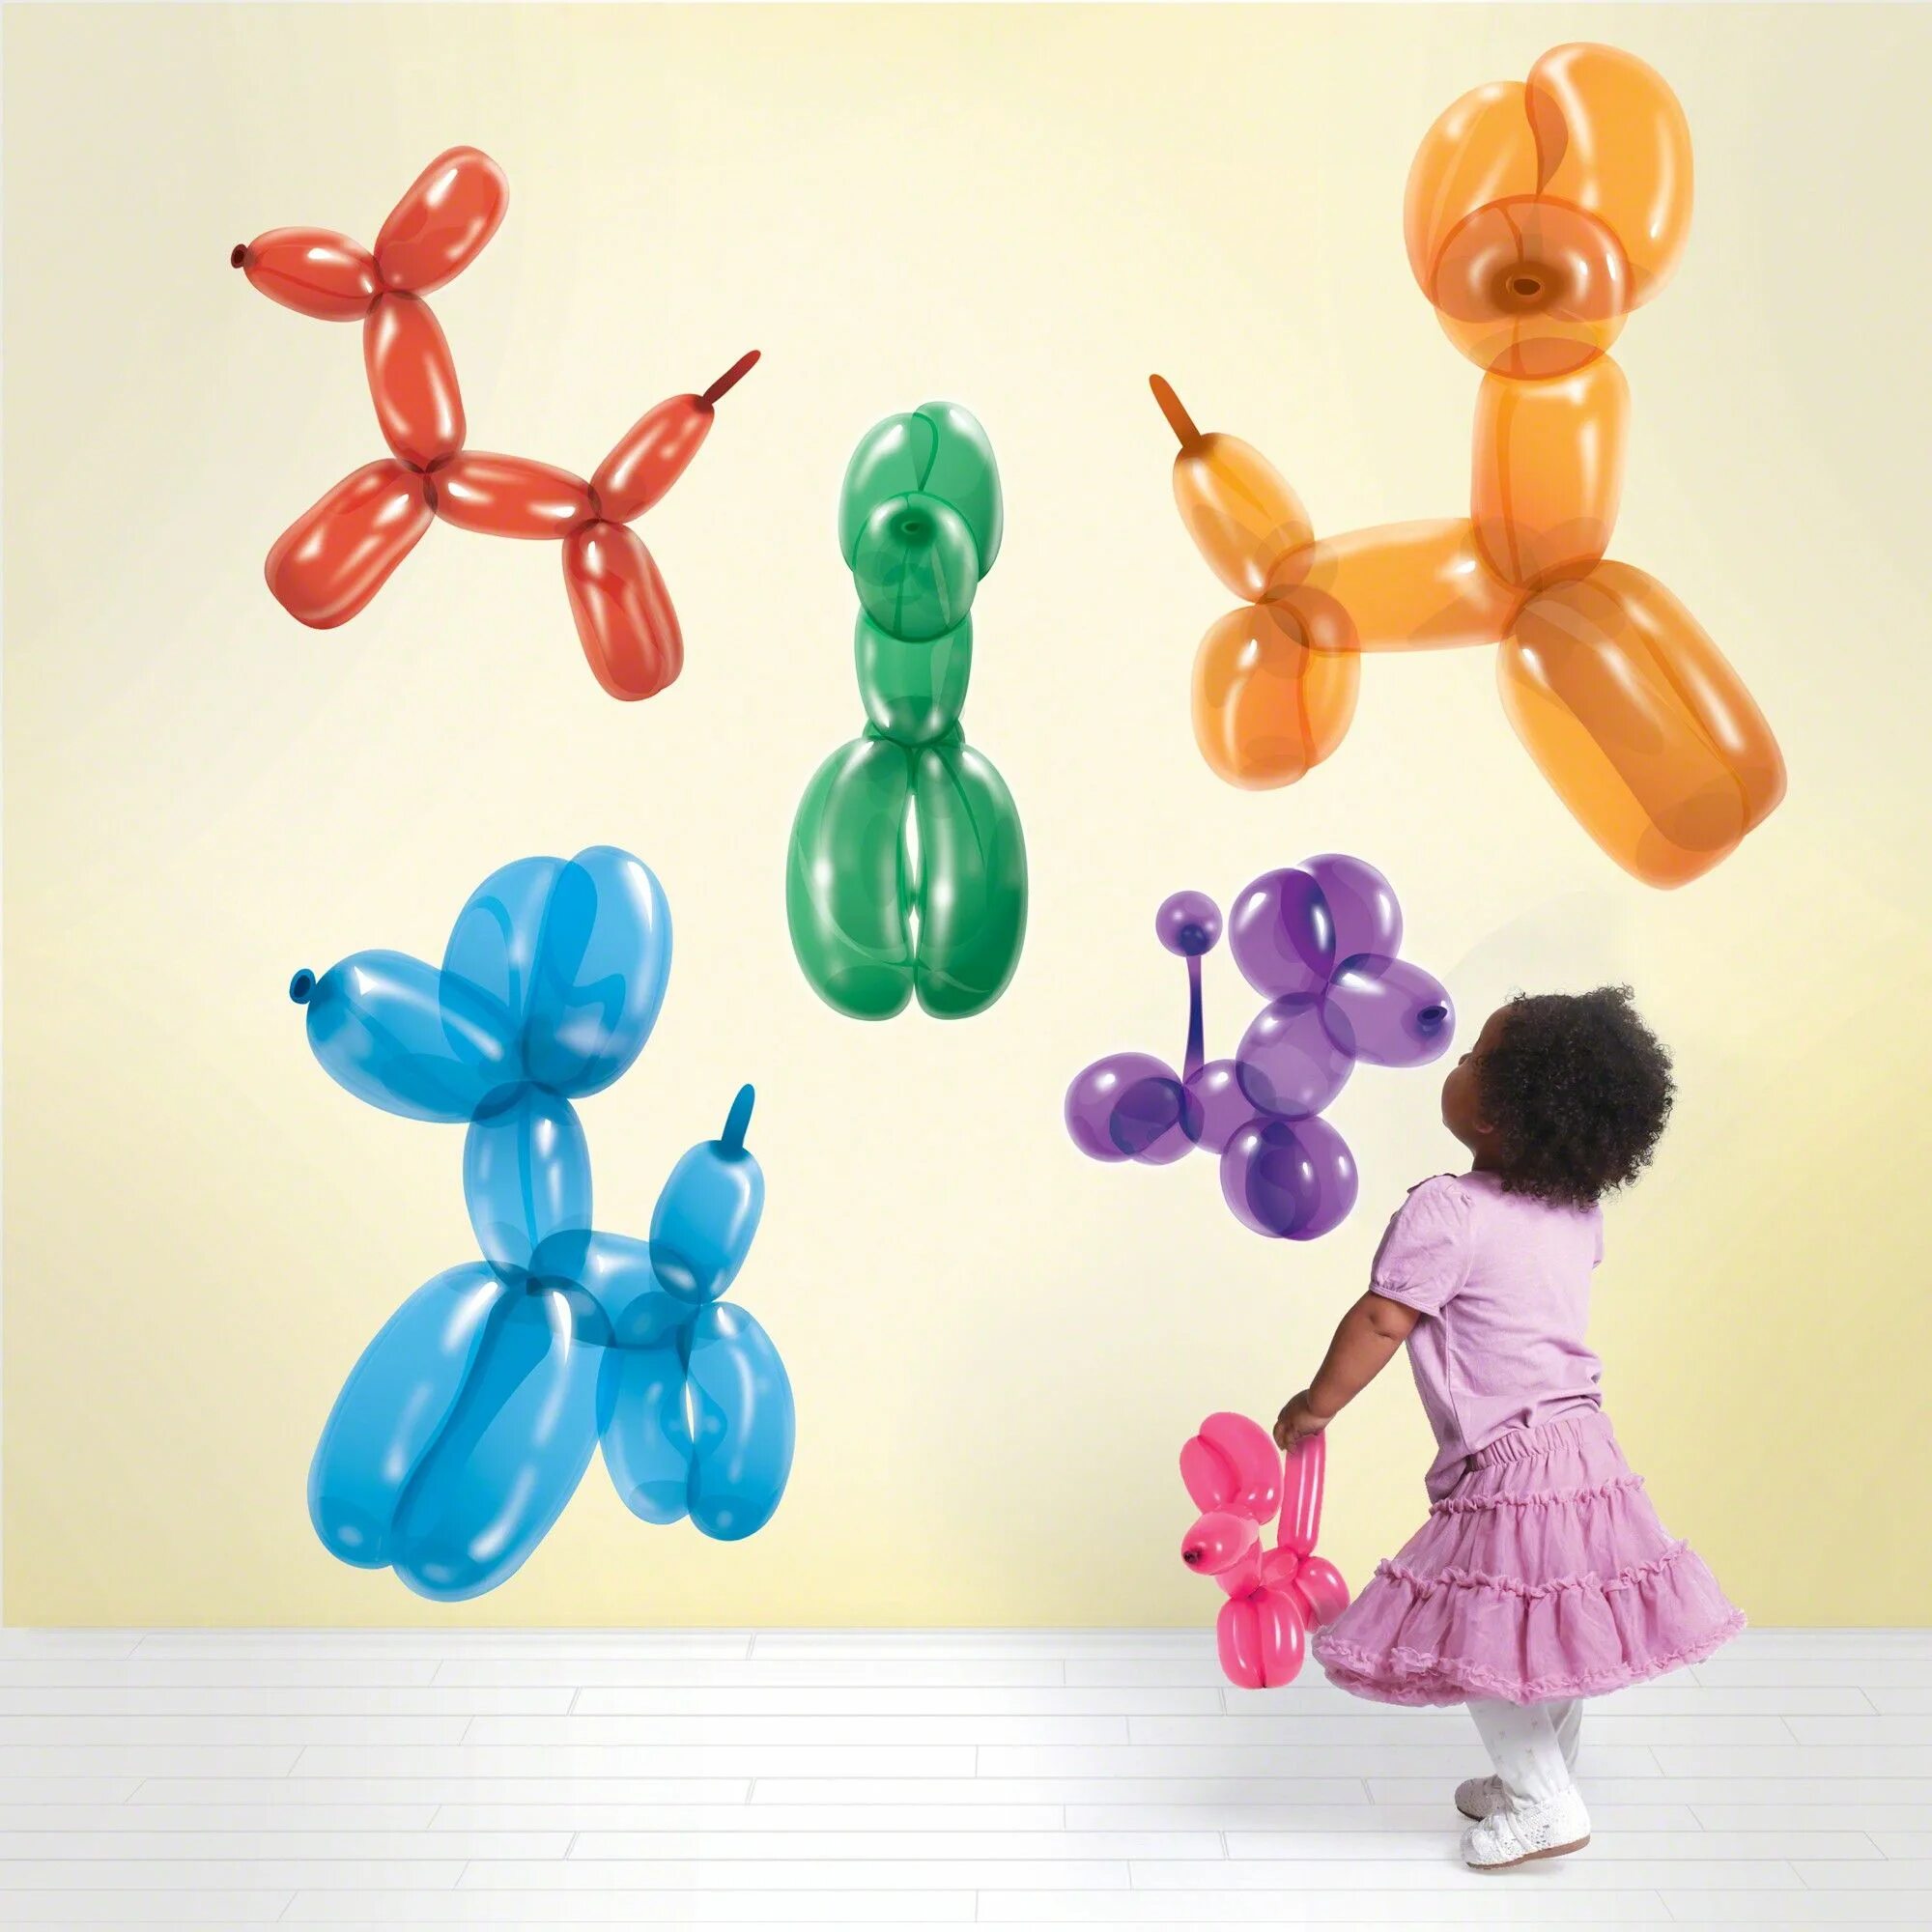 15 игрушек шаров. Фигуры из воздушных шаров. Фигурки из шаров колбасок. Моделирование из воздушных шариков. Игрушка из длинного шарика.